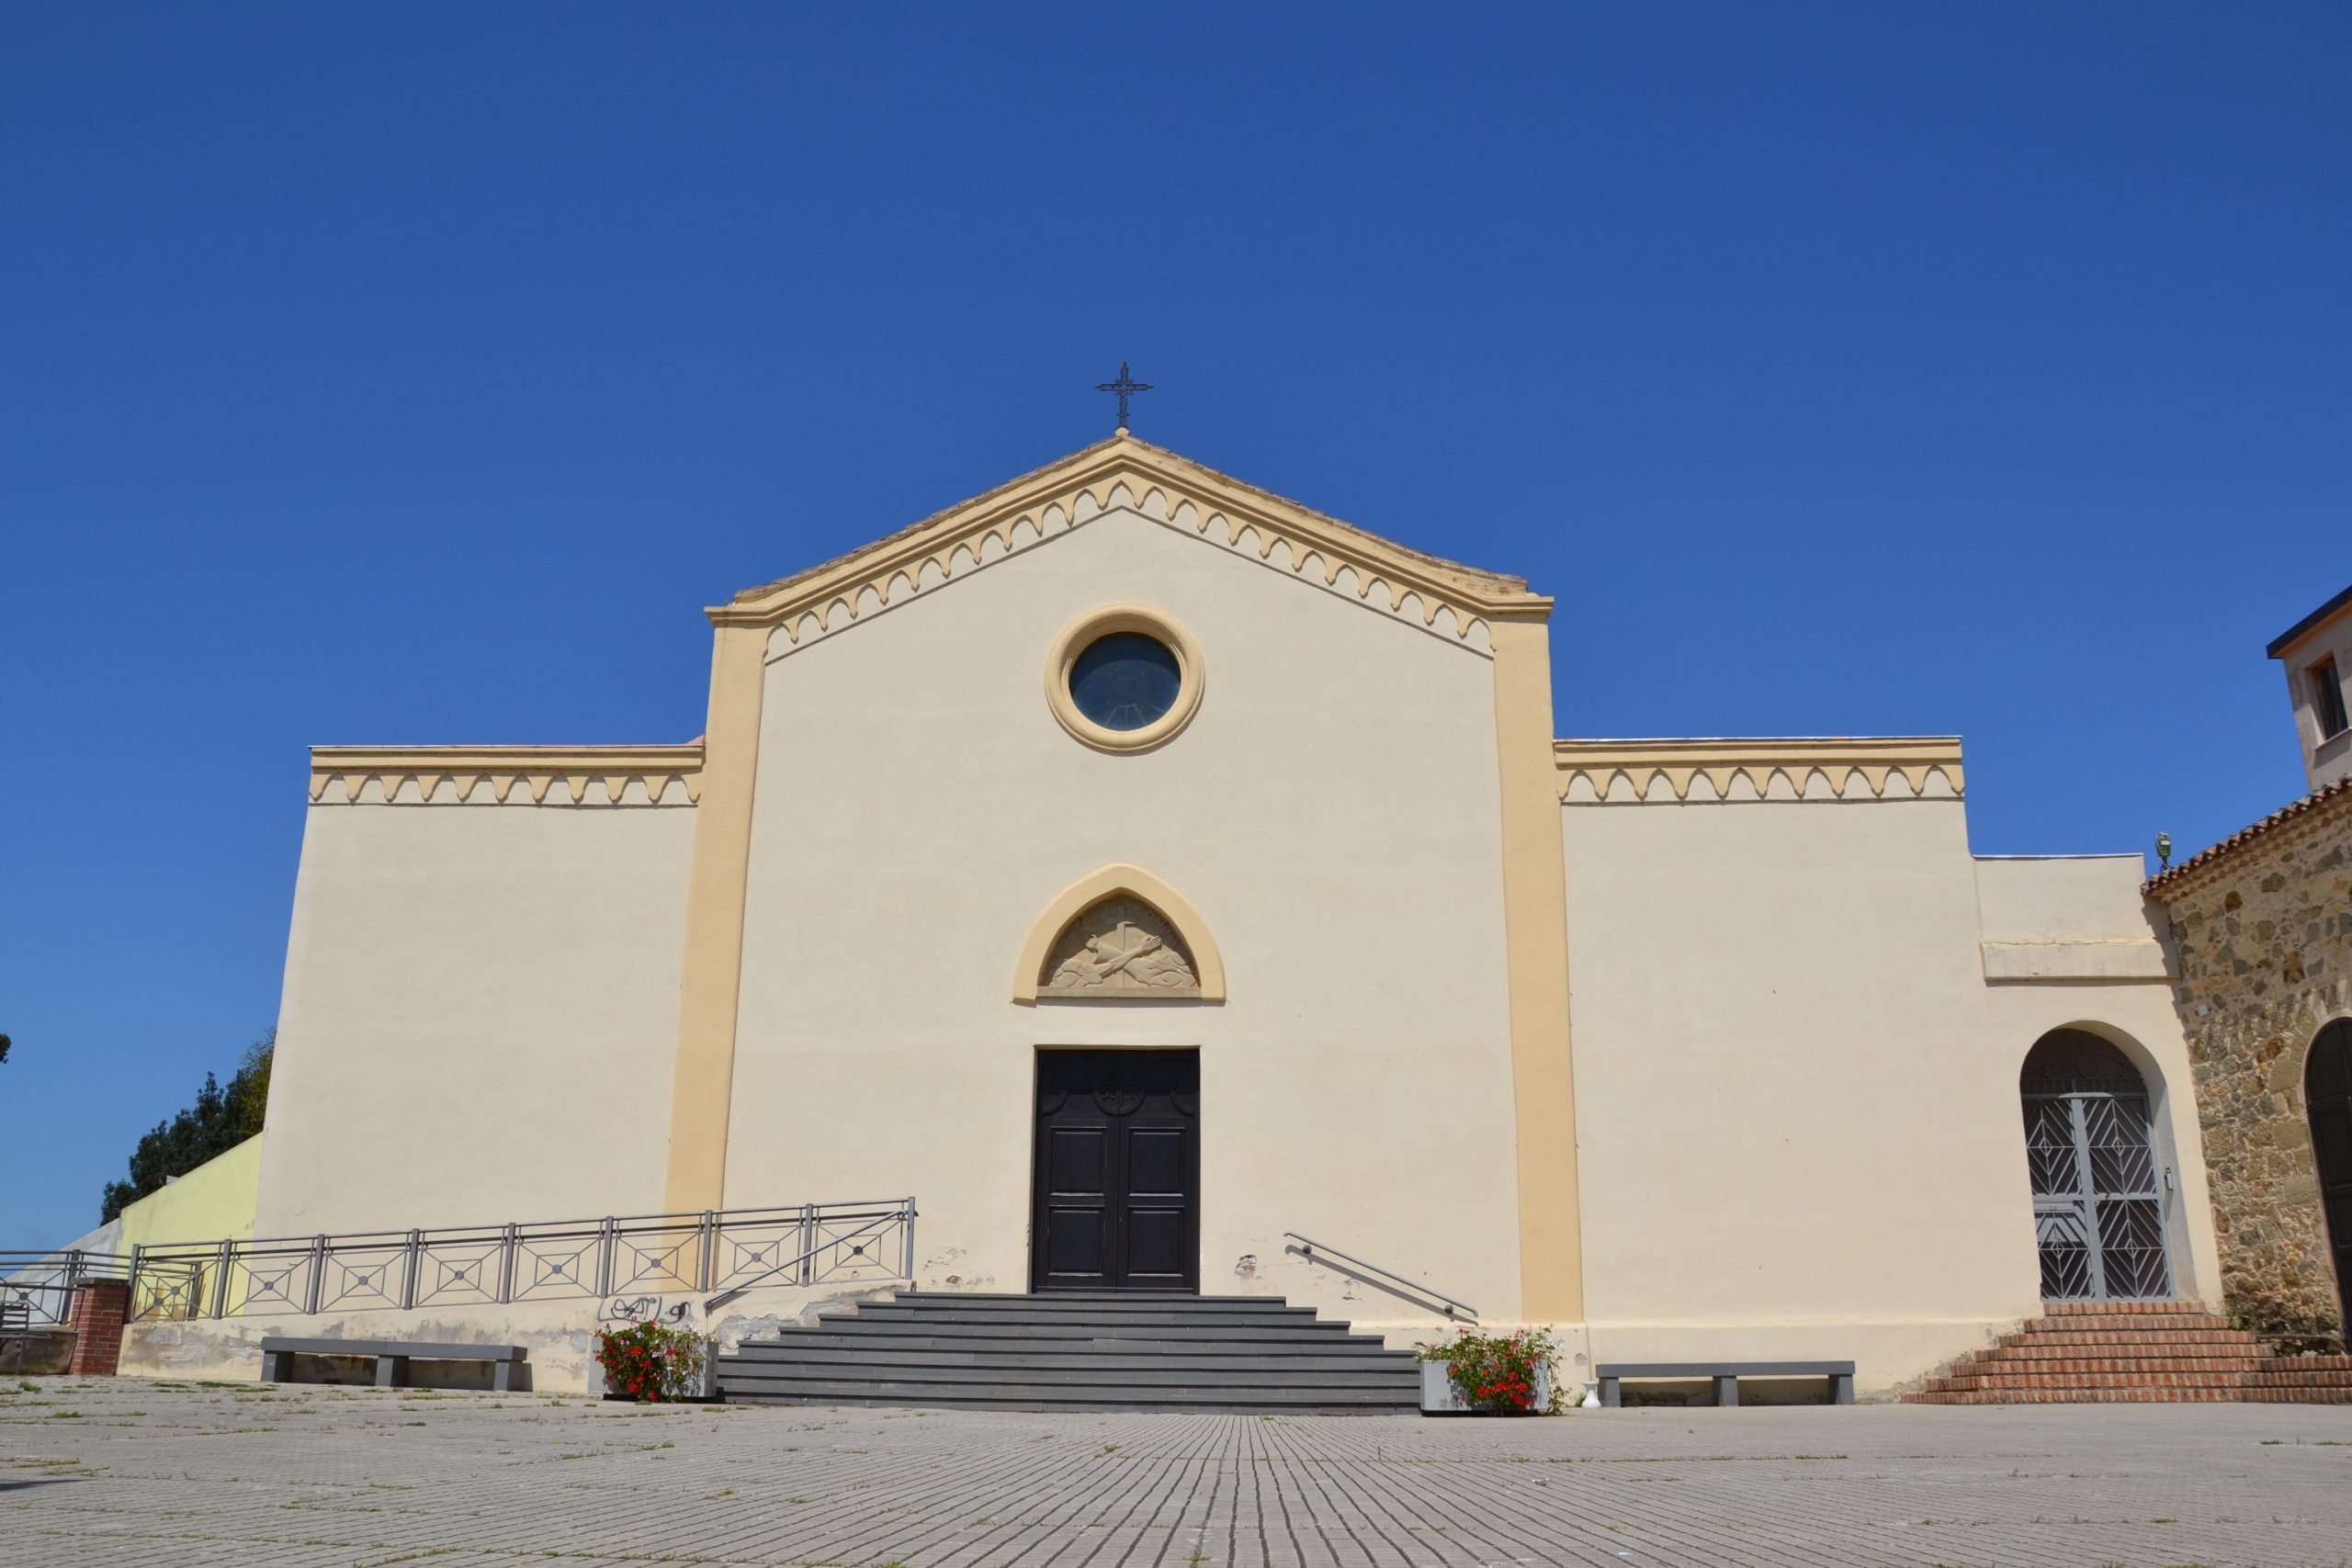 Chiesa di San francesco Sanluri